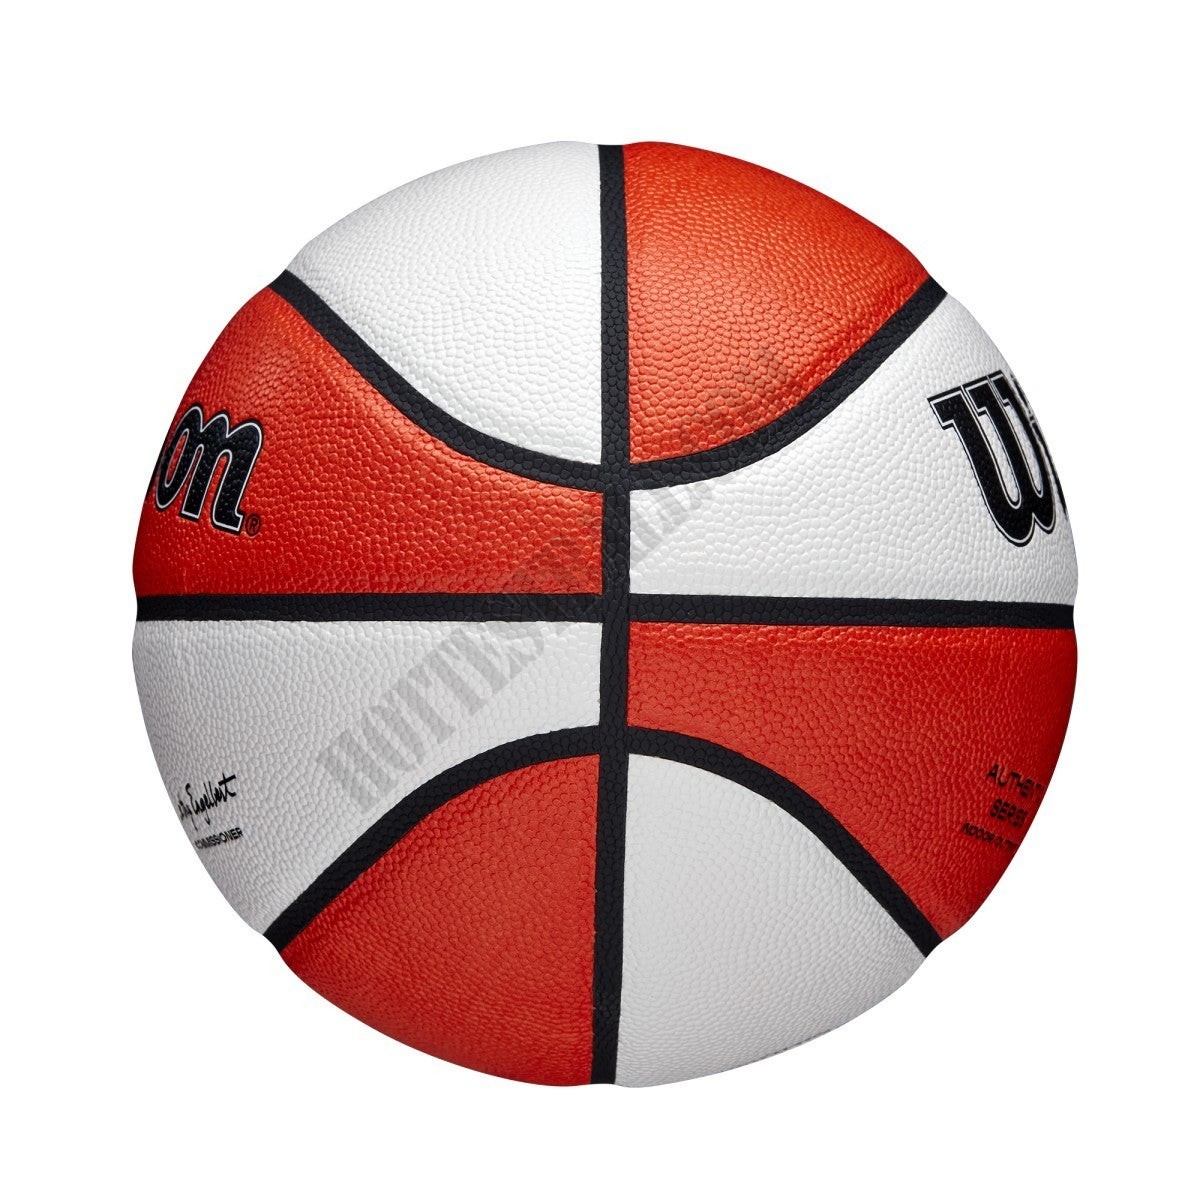 WNBA Authentic Indoor/Outdoor Basketball - Wilson Discount Store - -4